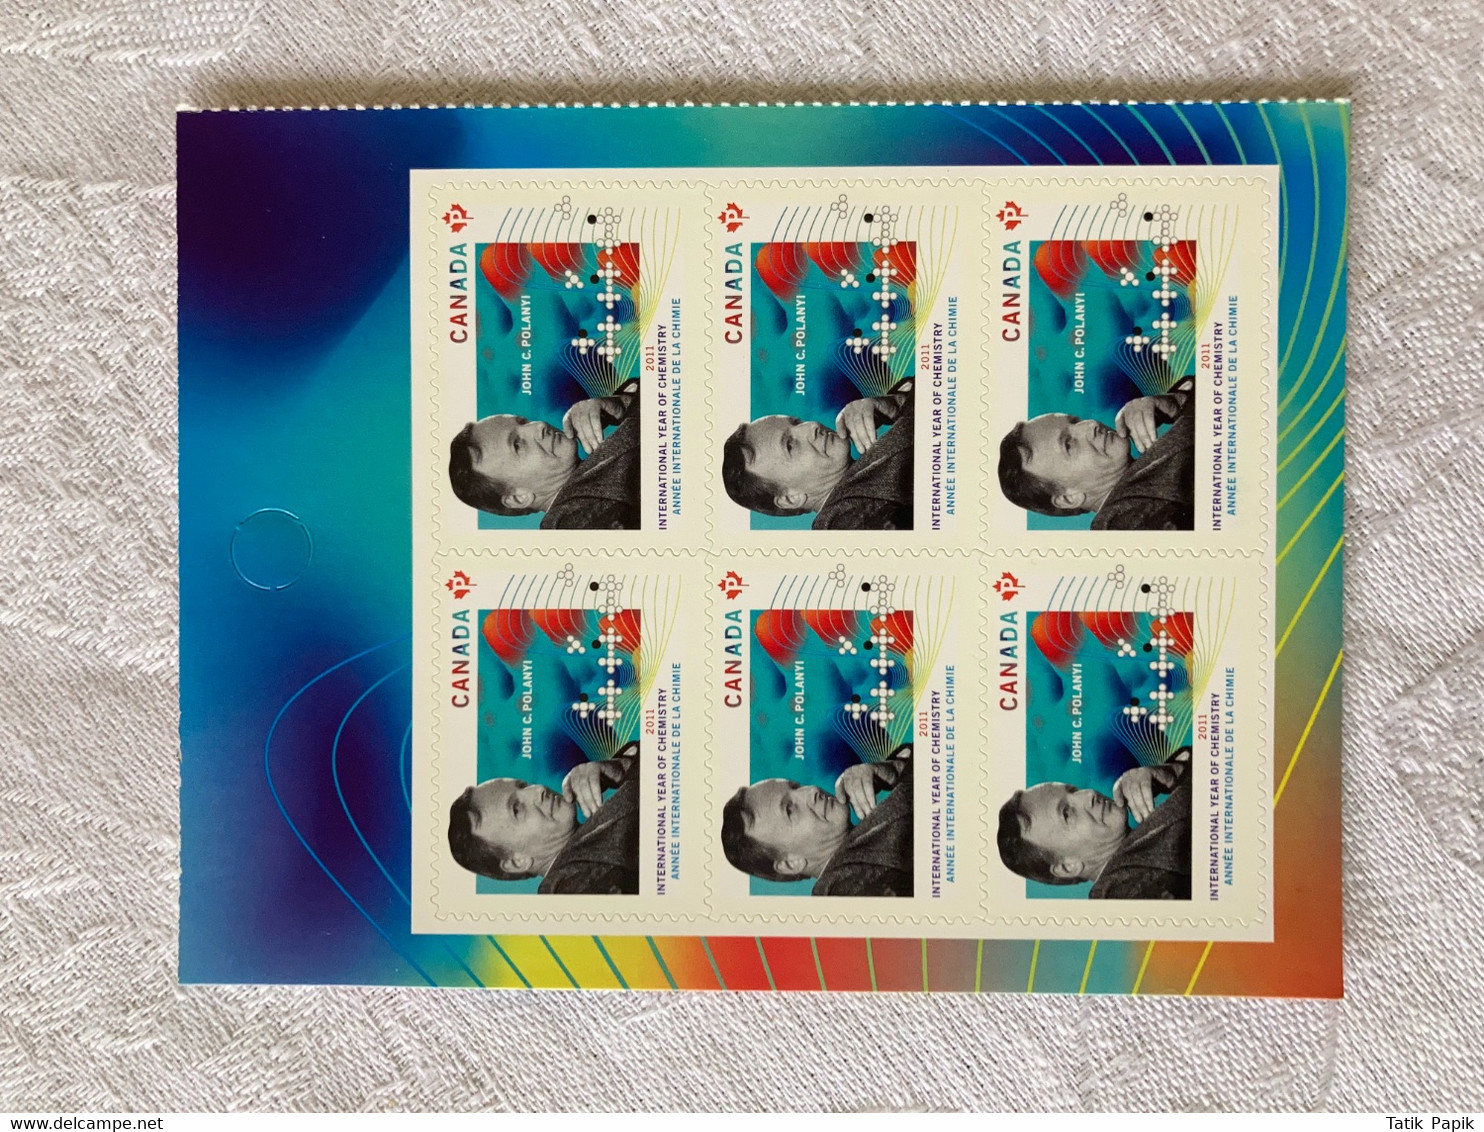 2011 Canada Année Internationale De La Chimie Timbre Permanent Stamps - Booklets Pages